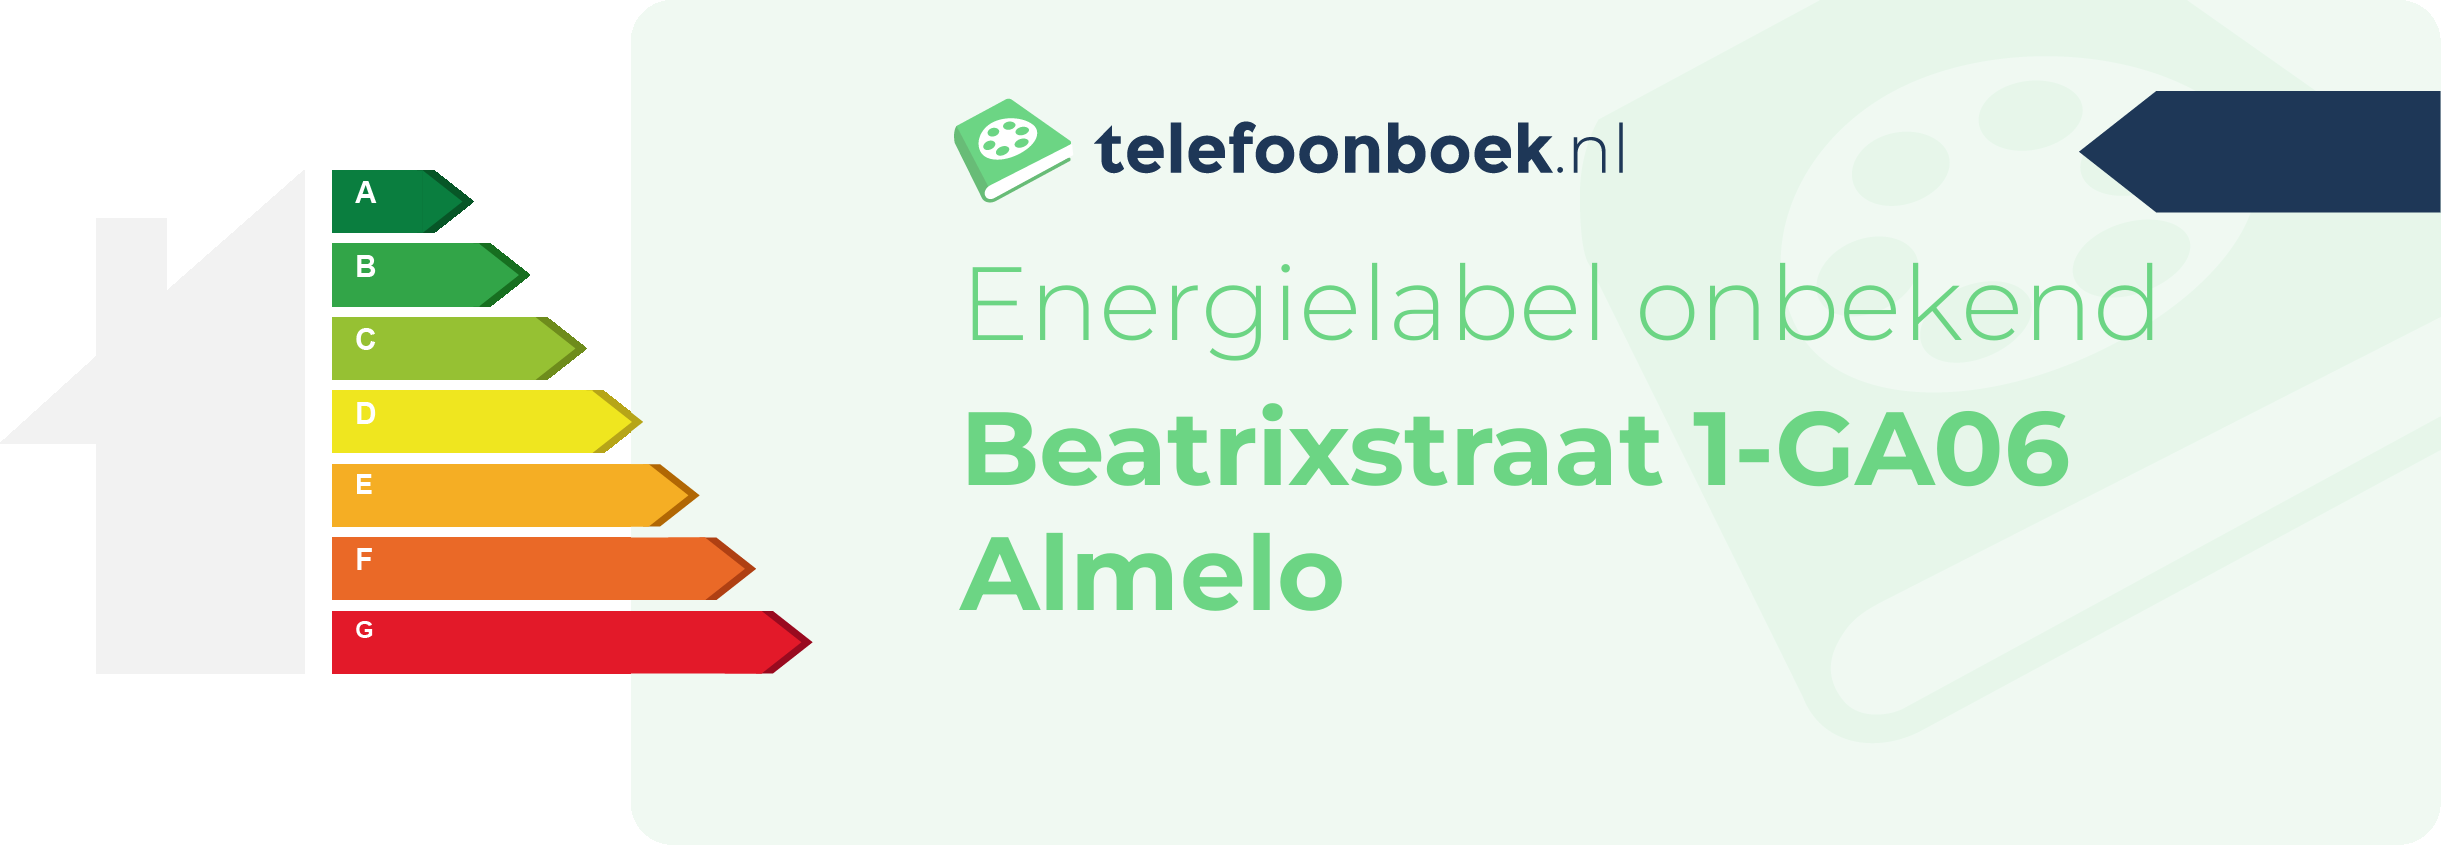 Energielabel Beatrixstraat 1-GA06 Almelo